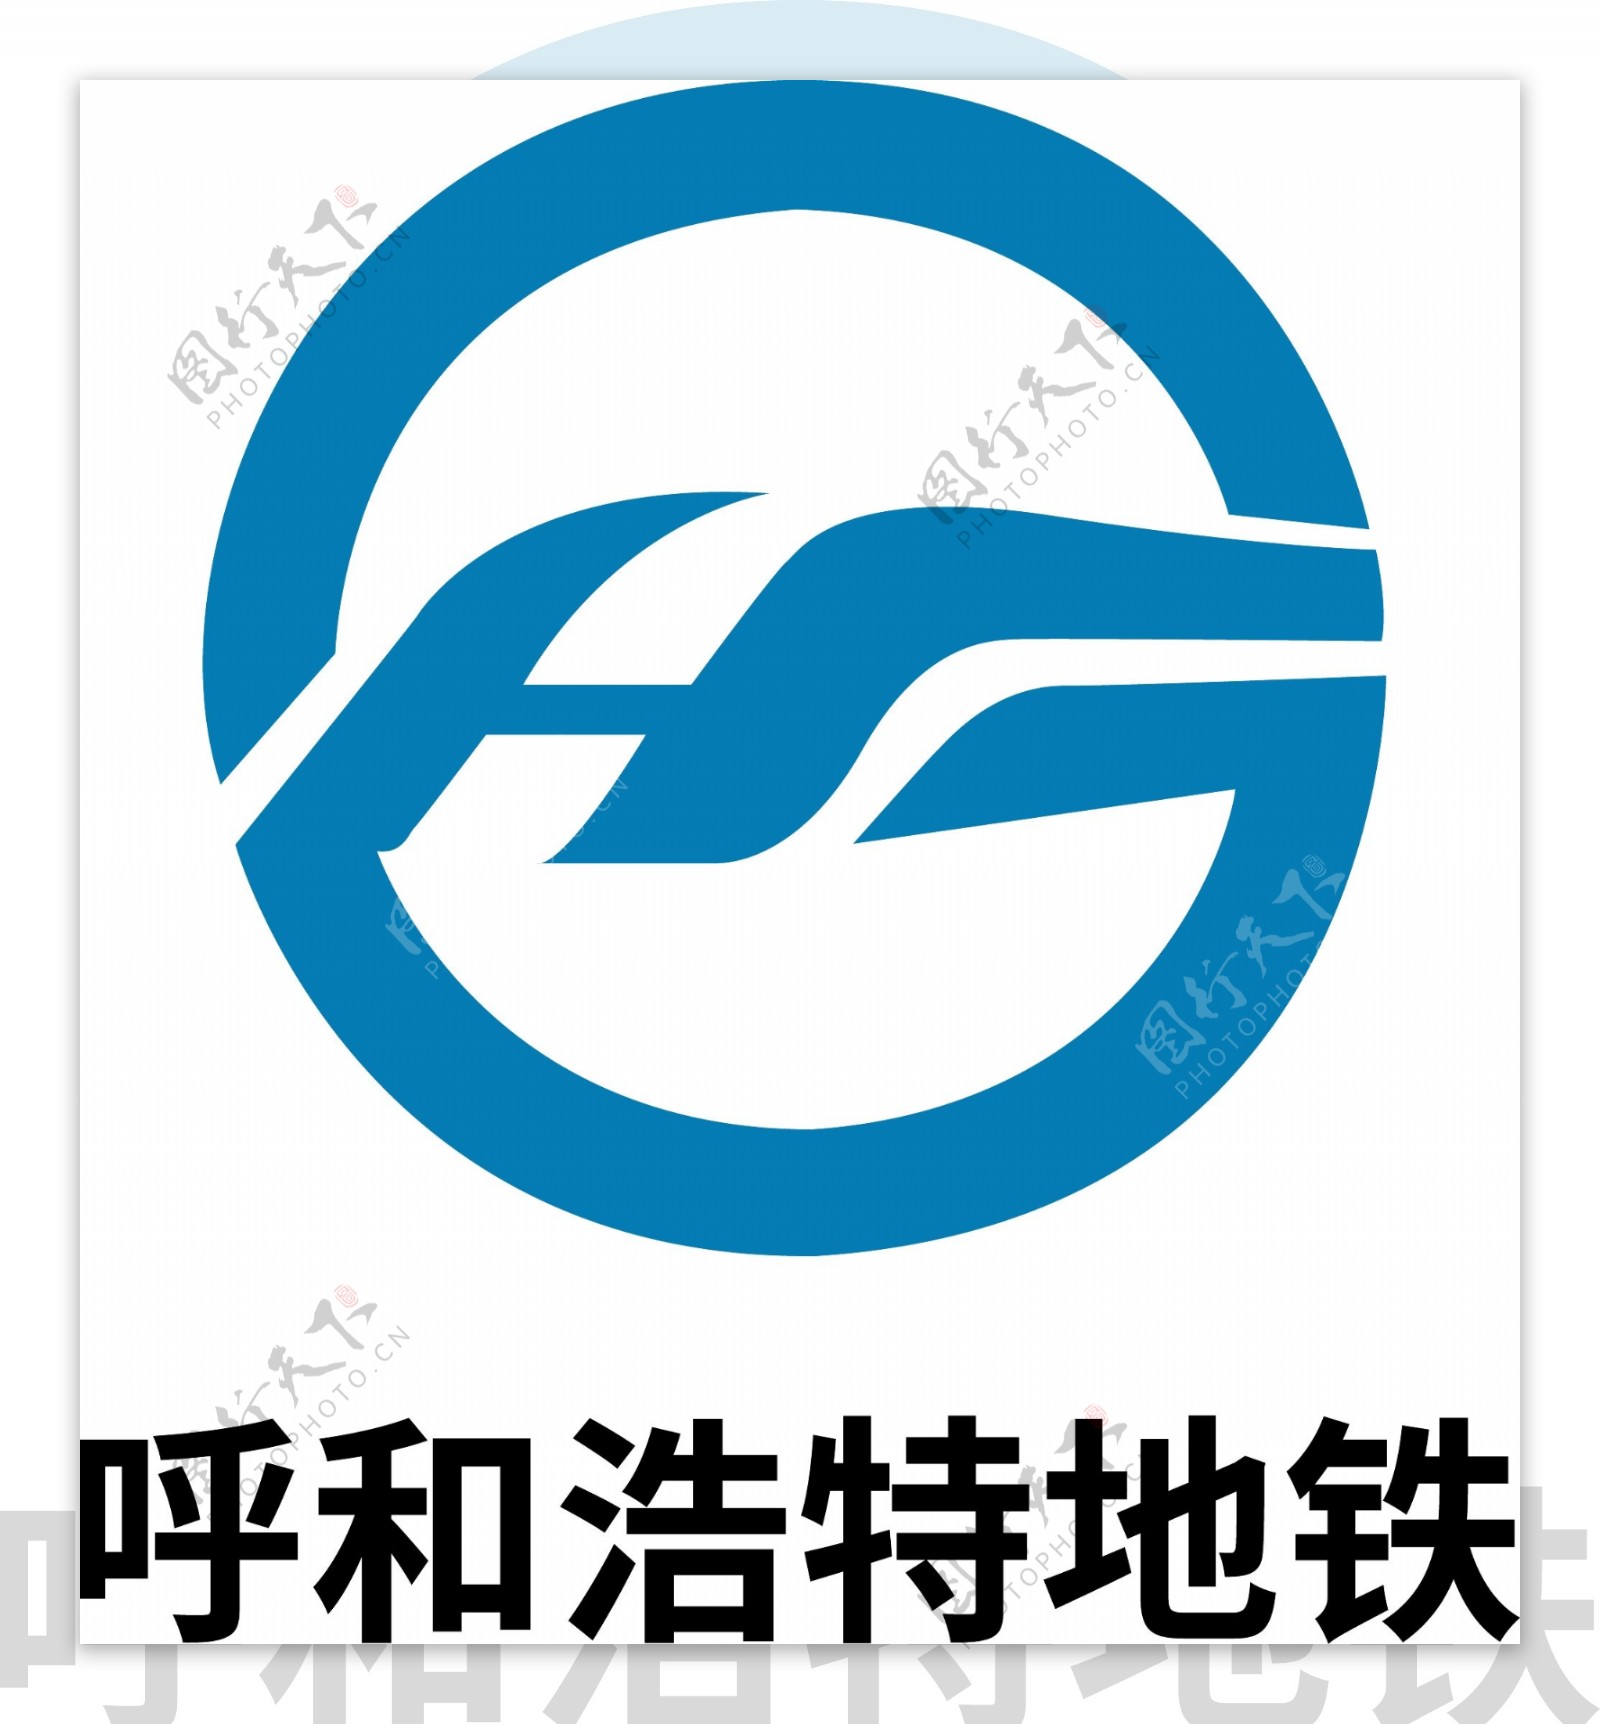 呼和浩特地铁logo